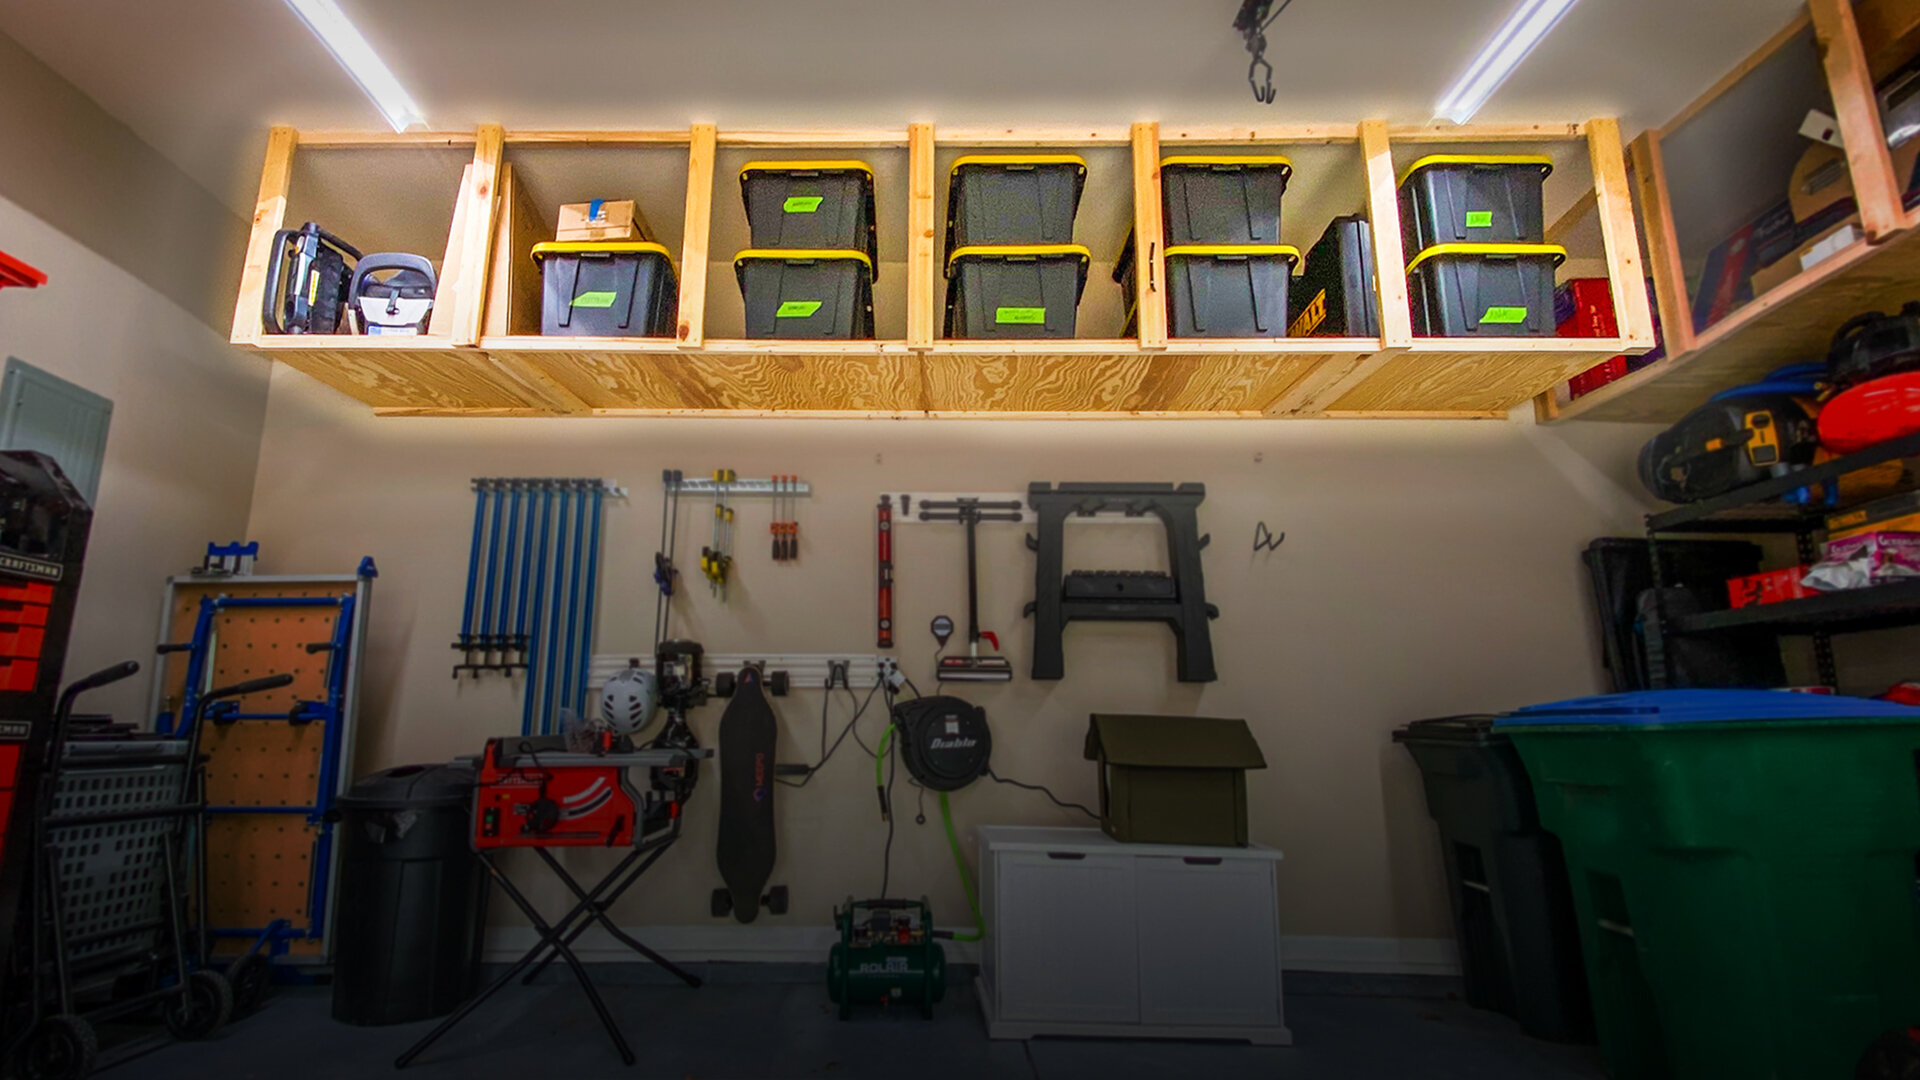 How To Build Diy Garage Storage Shelves, Diy Shelves For Garage Storage